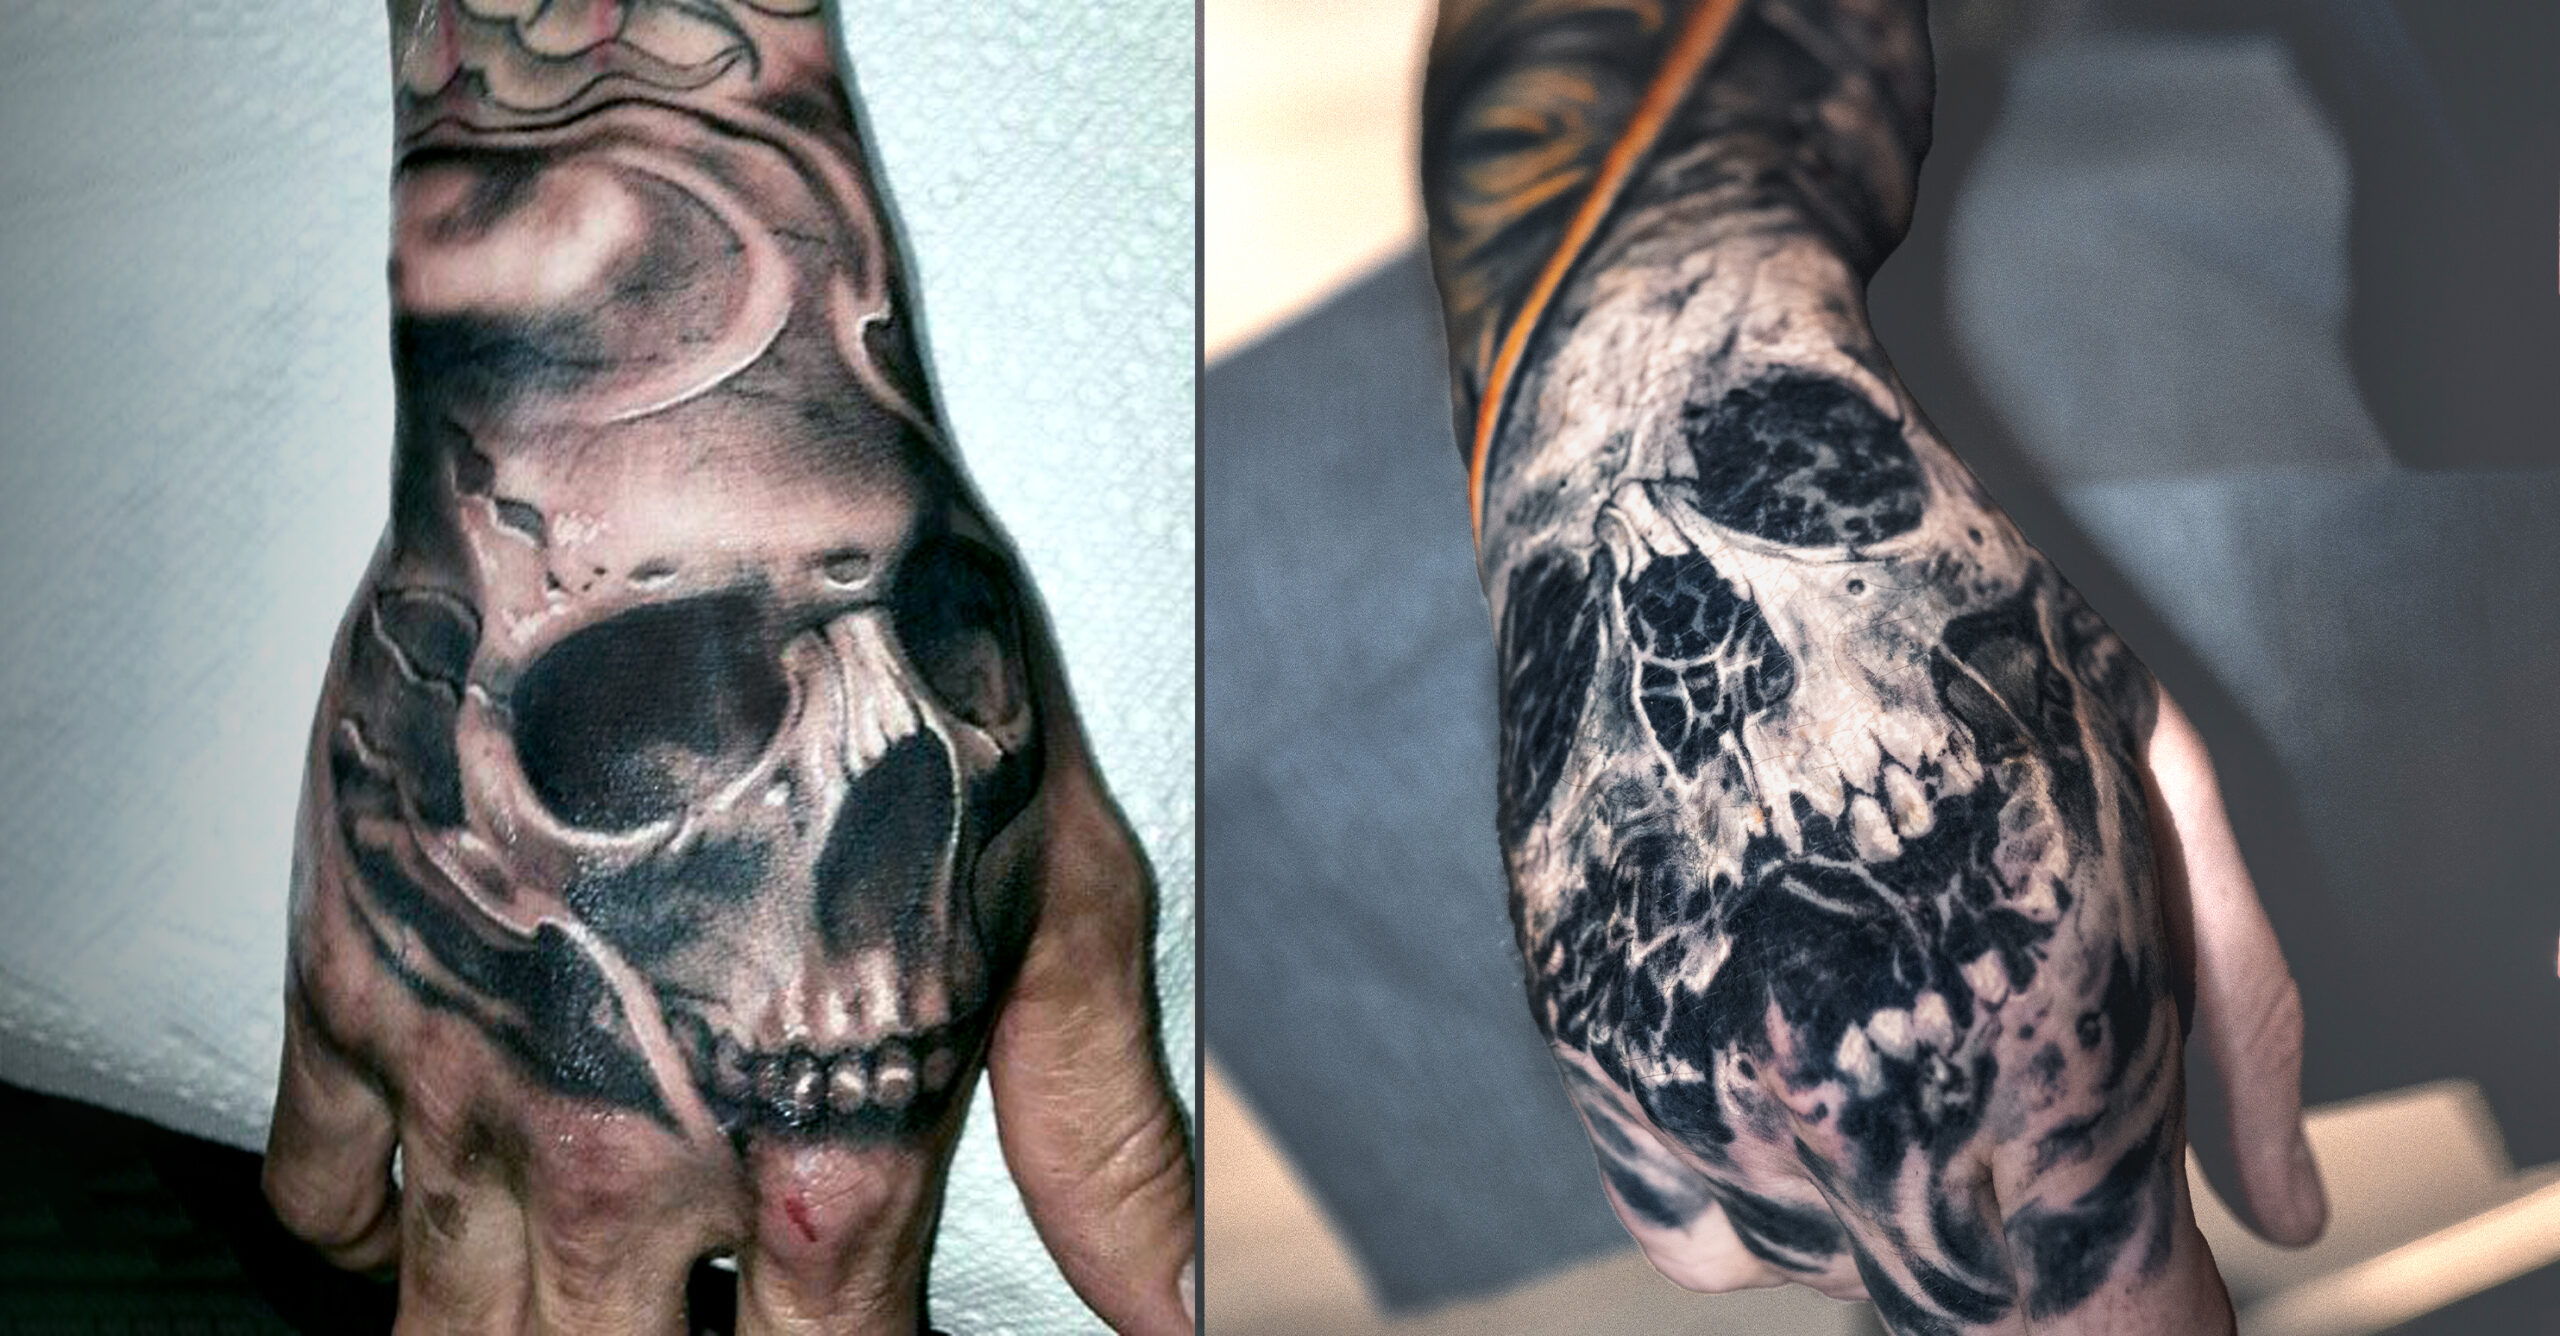 Skull - Skull Geometric Tattoo Designs, HD Png Download - kindpng